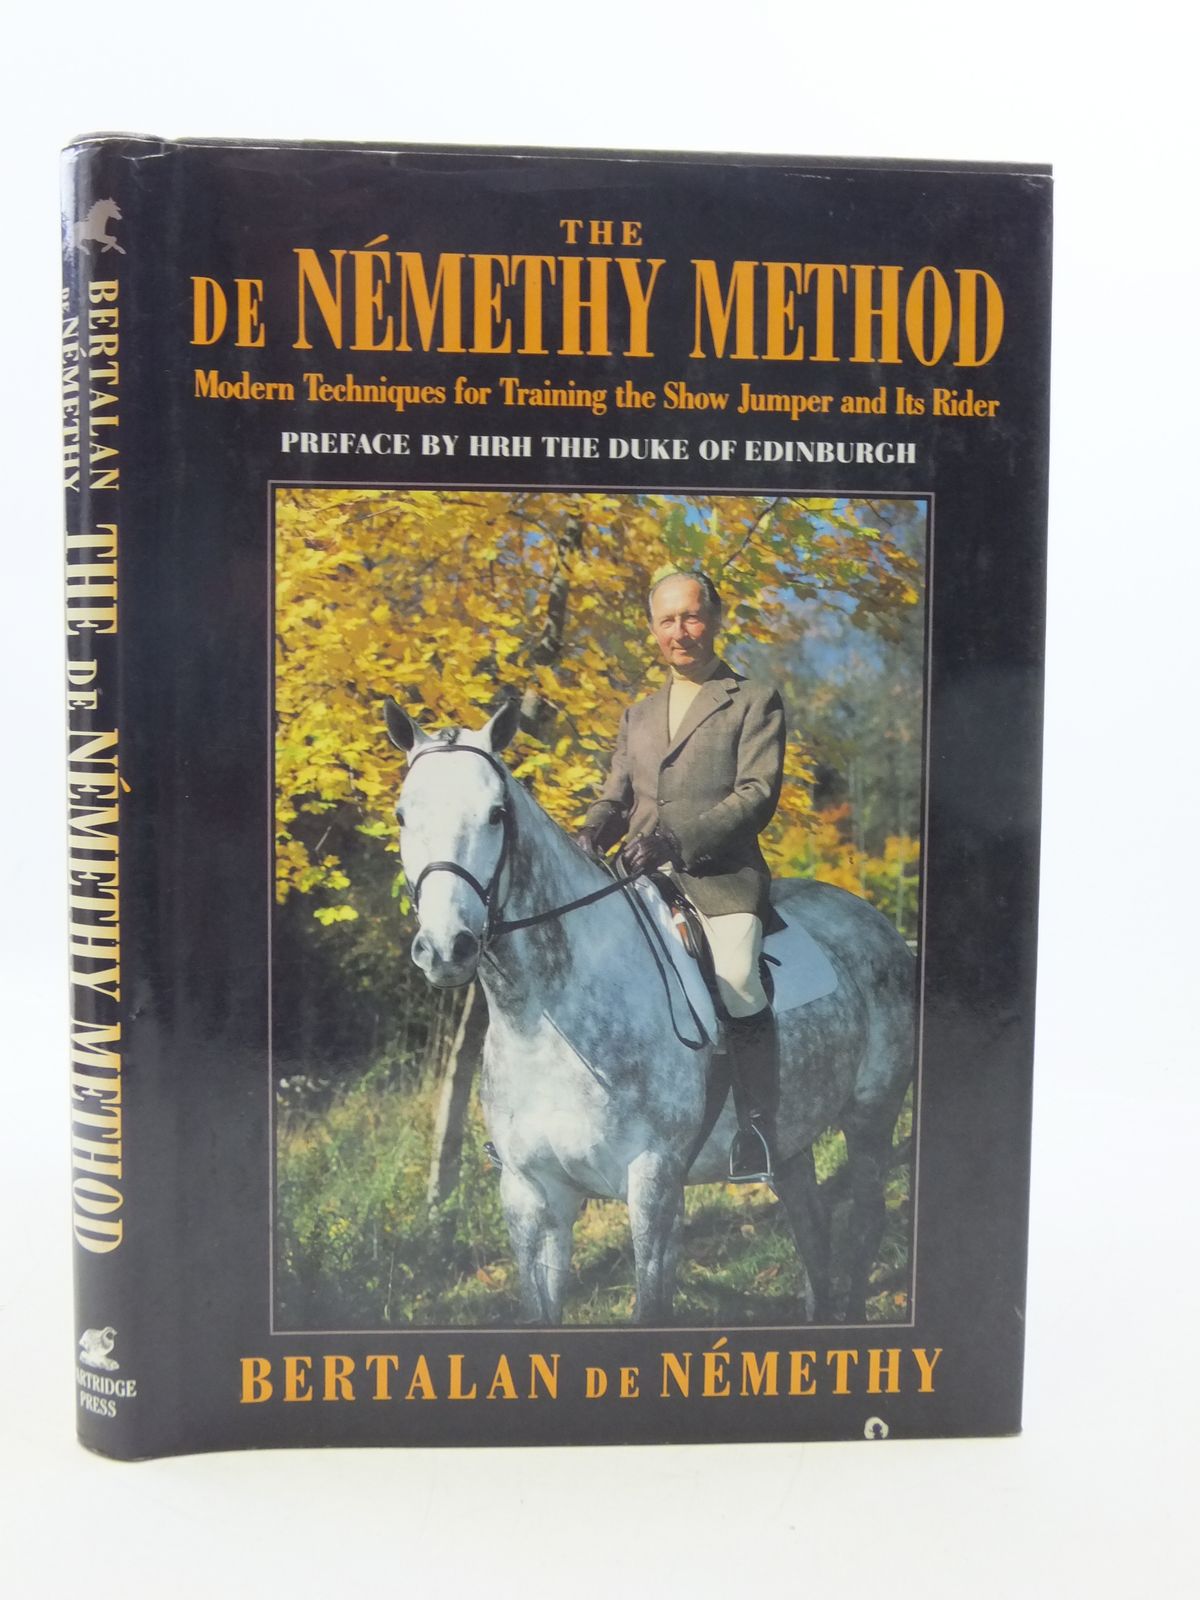 The De Nemethy Method